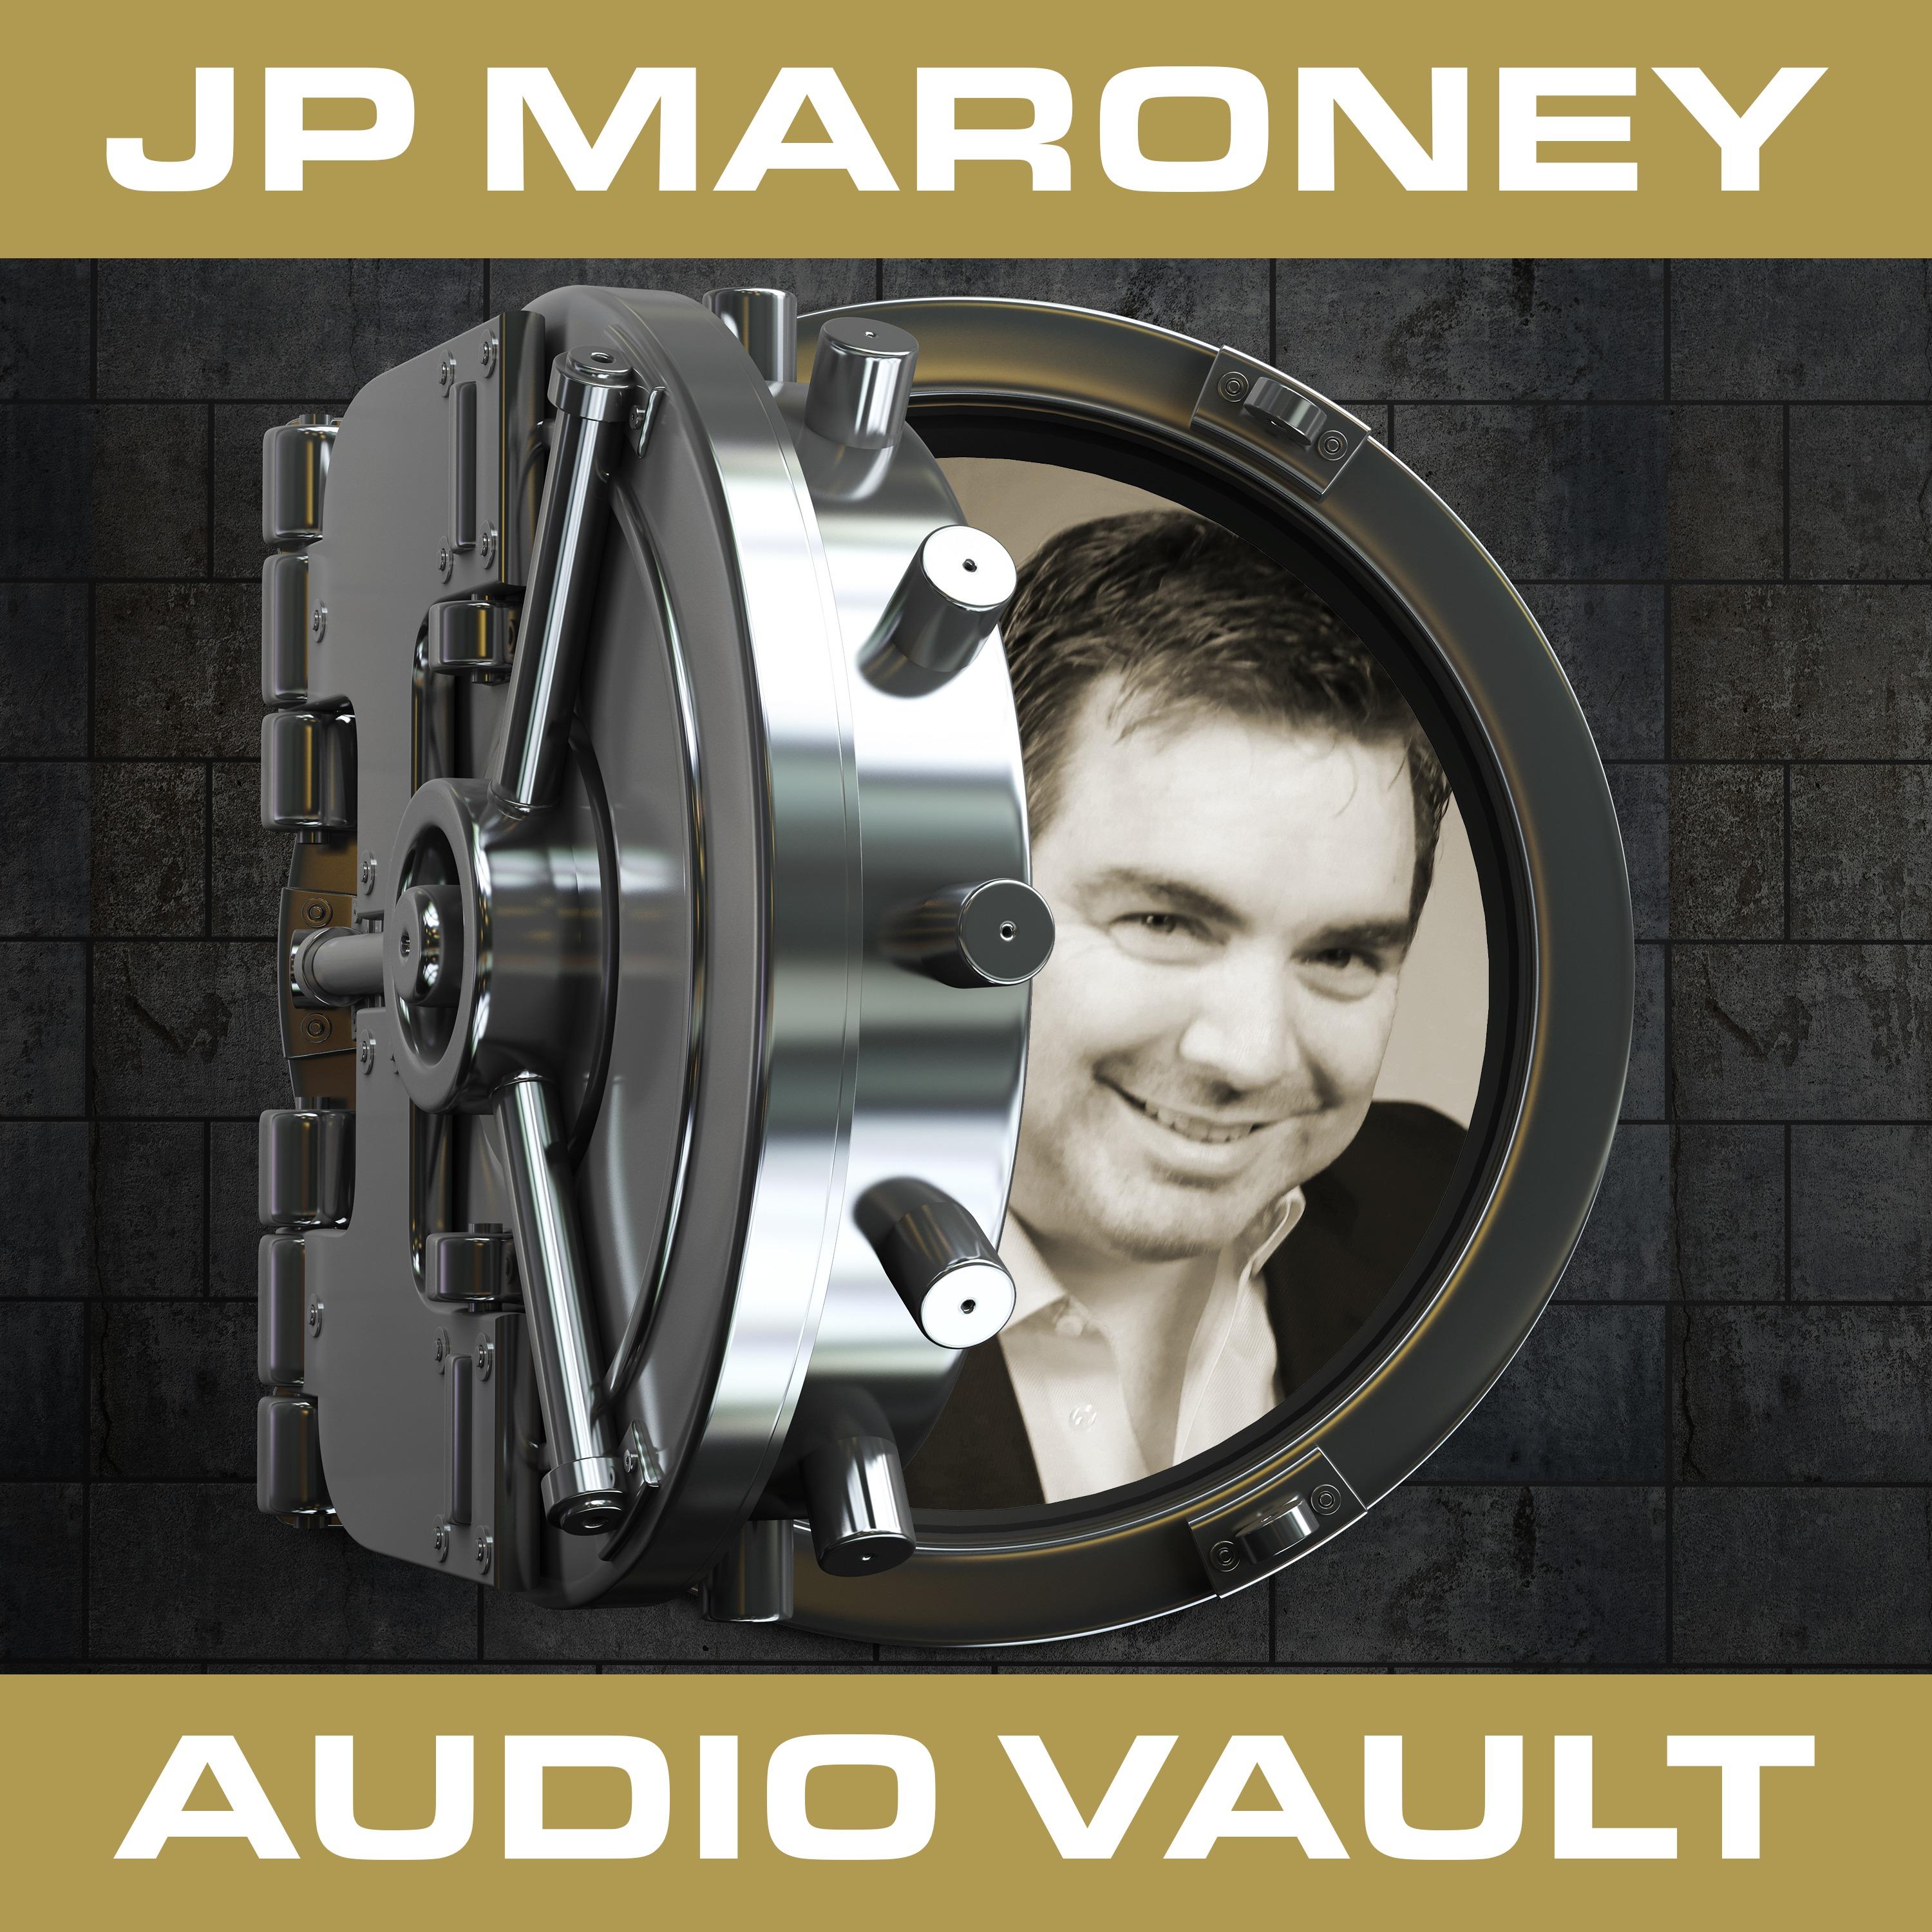 The JP Maroney Audio Vault